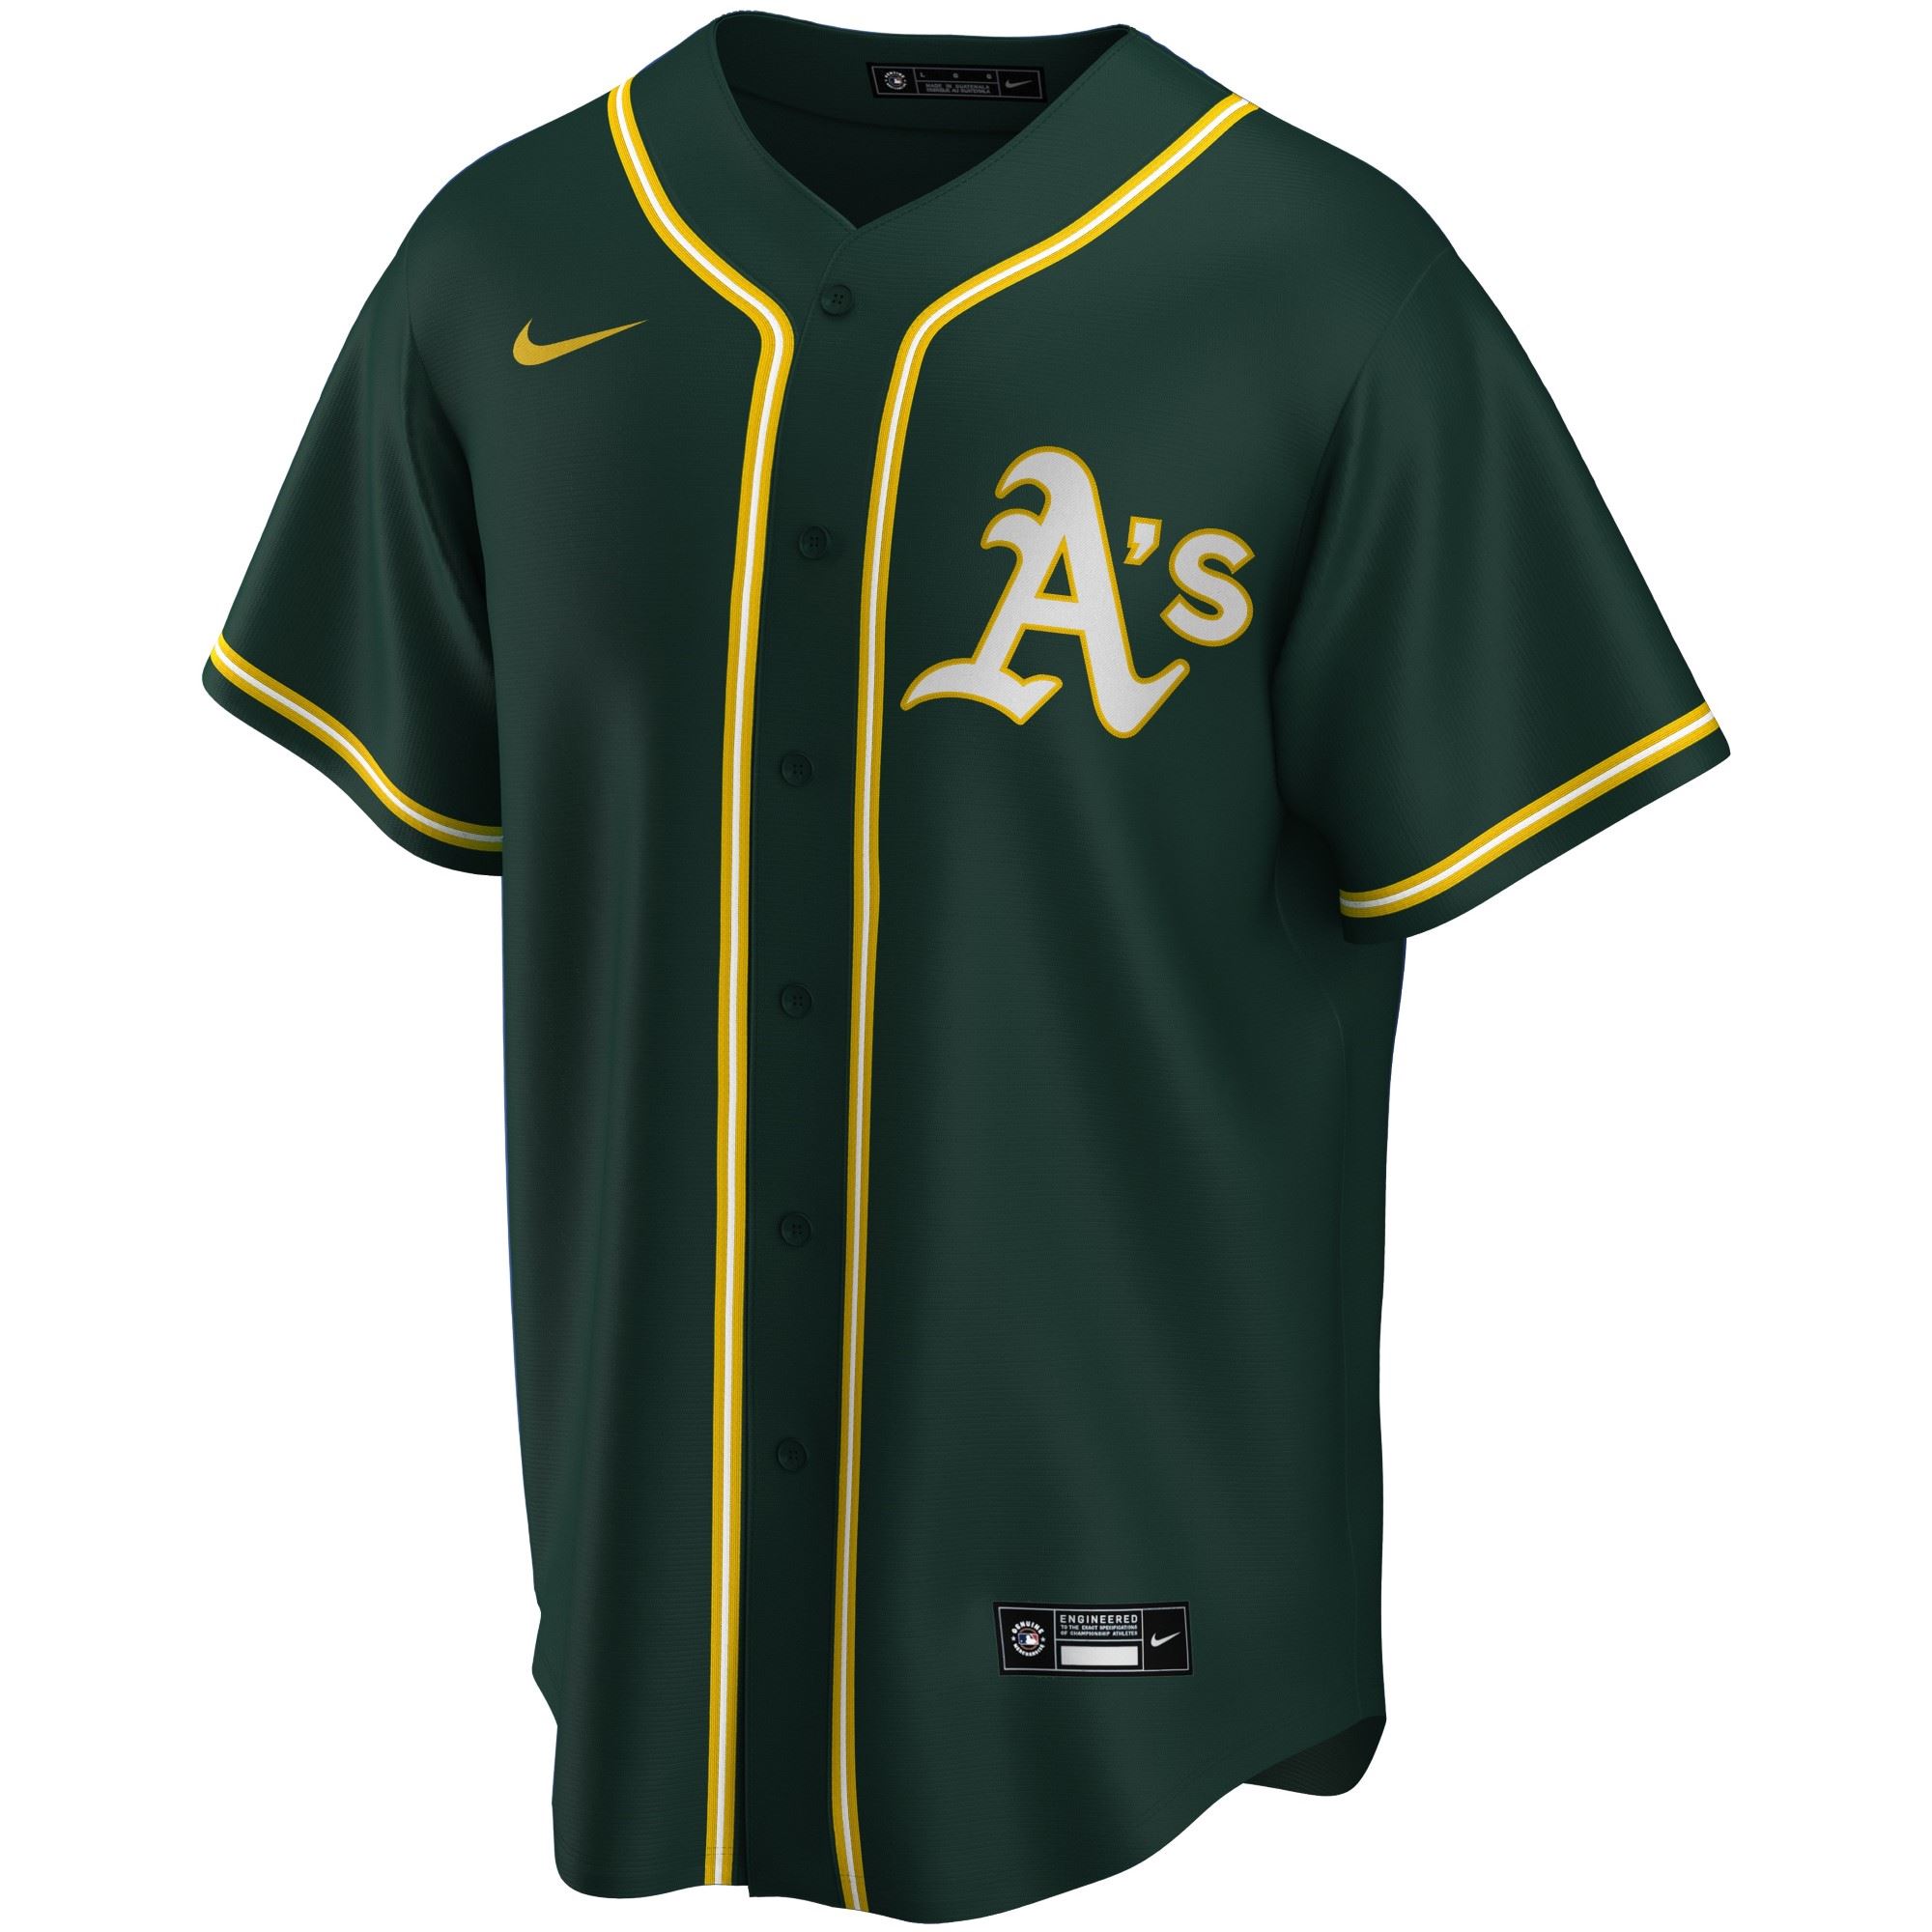 Oakland Athletics Official MLB Replica Alternate Jersey Dark Green Nike